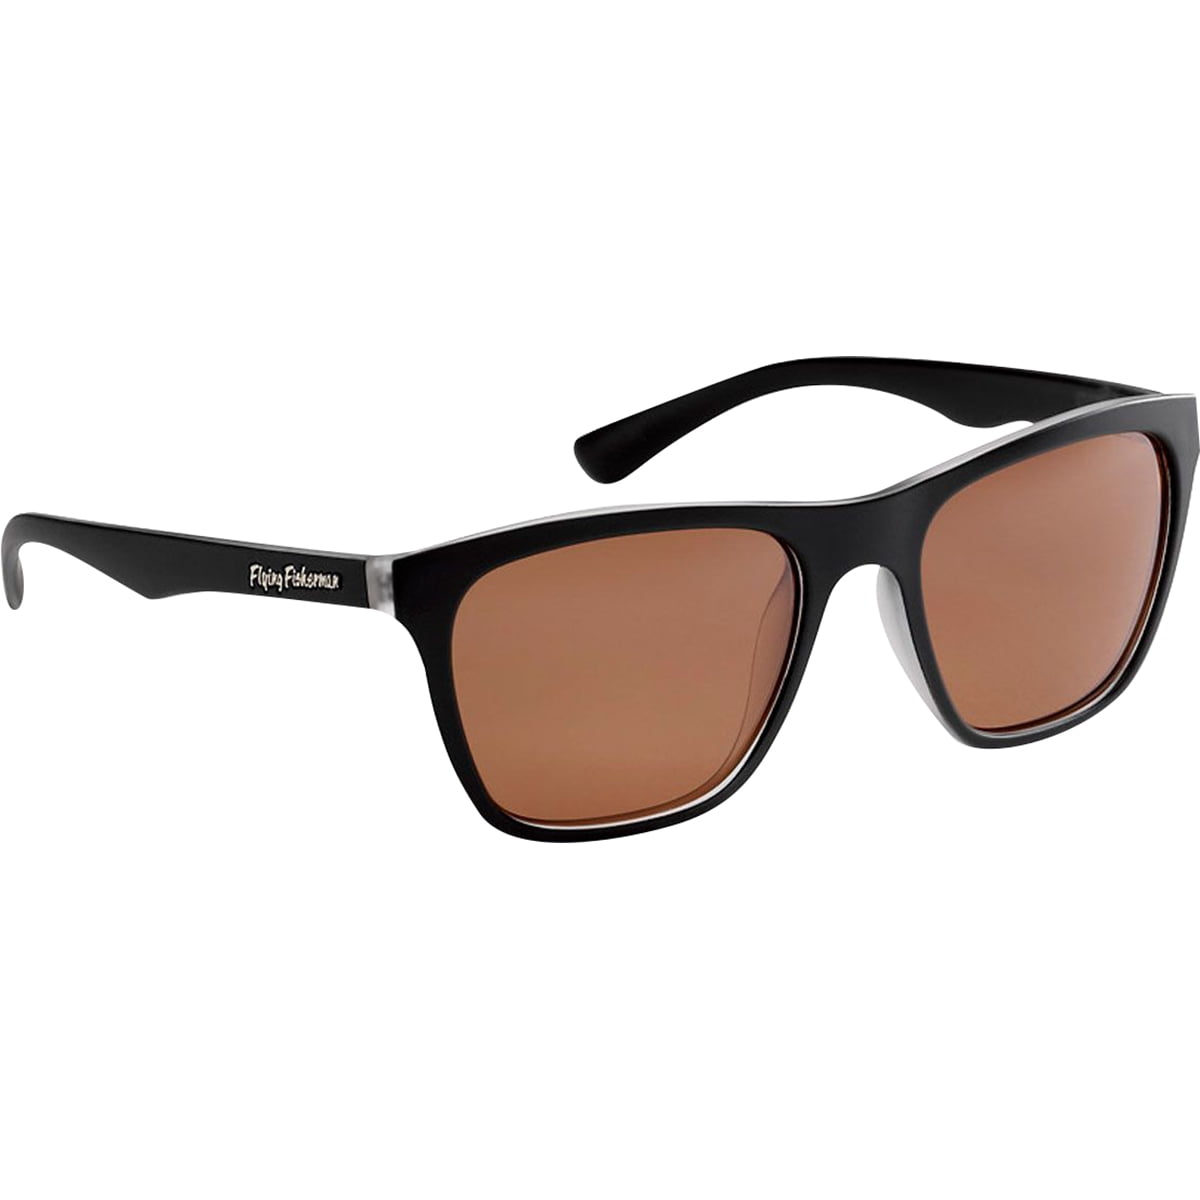 Calcutta Sh1atort Steelhead Sunglasses Tortoise Frame Amber Lens for sale online 